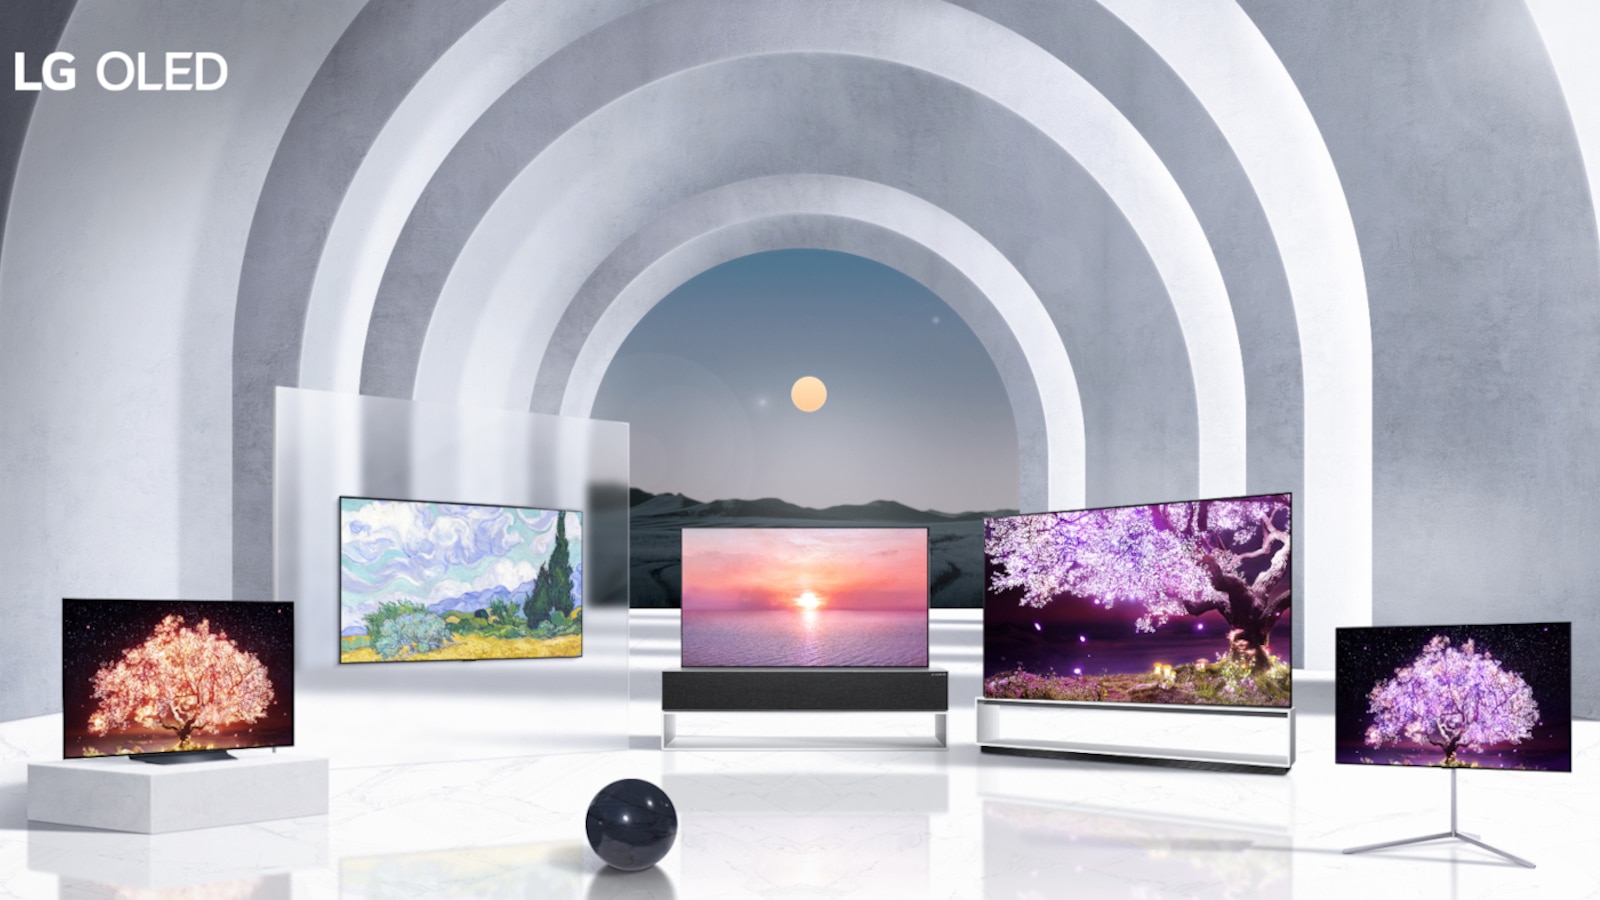 LG ra mắt TV OLED giá rẻ nhất tại sự kiện CES 2021